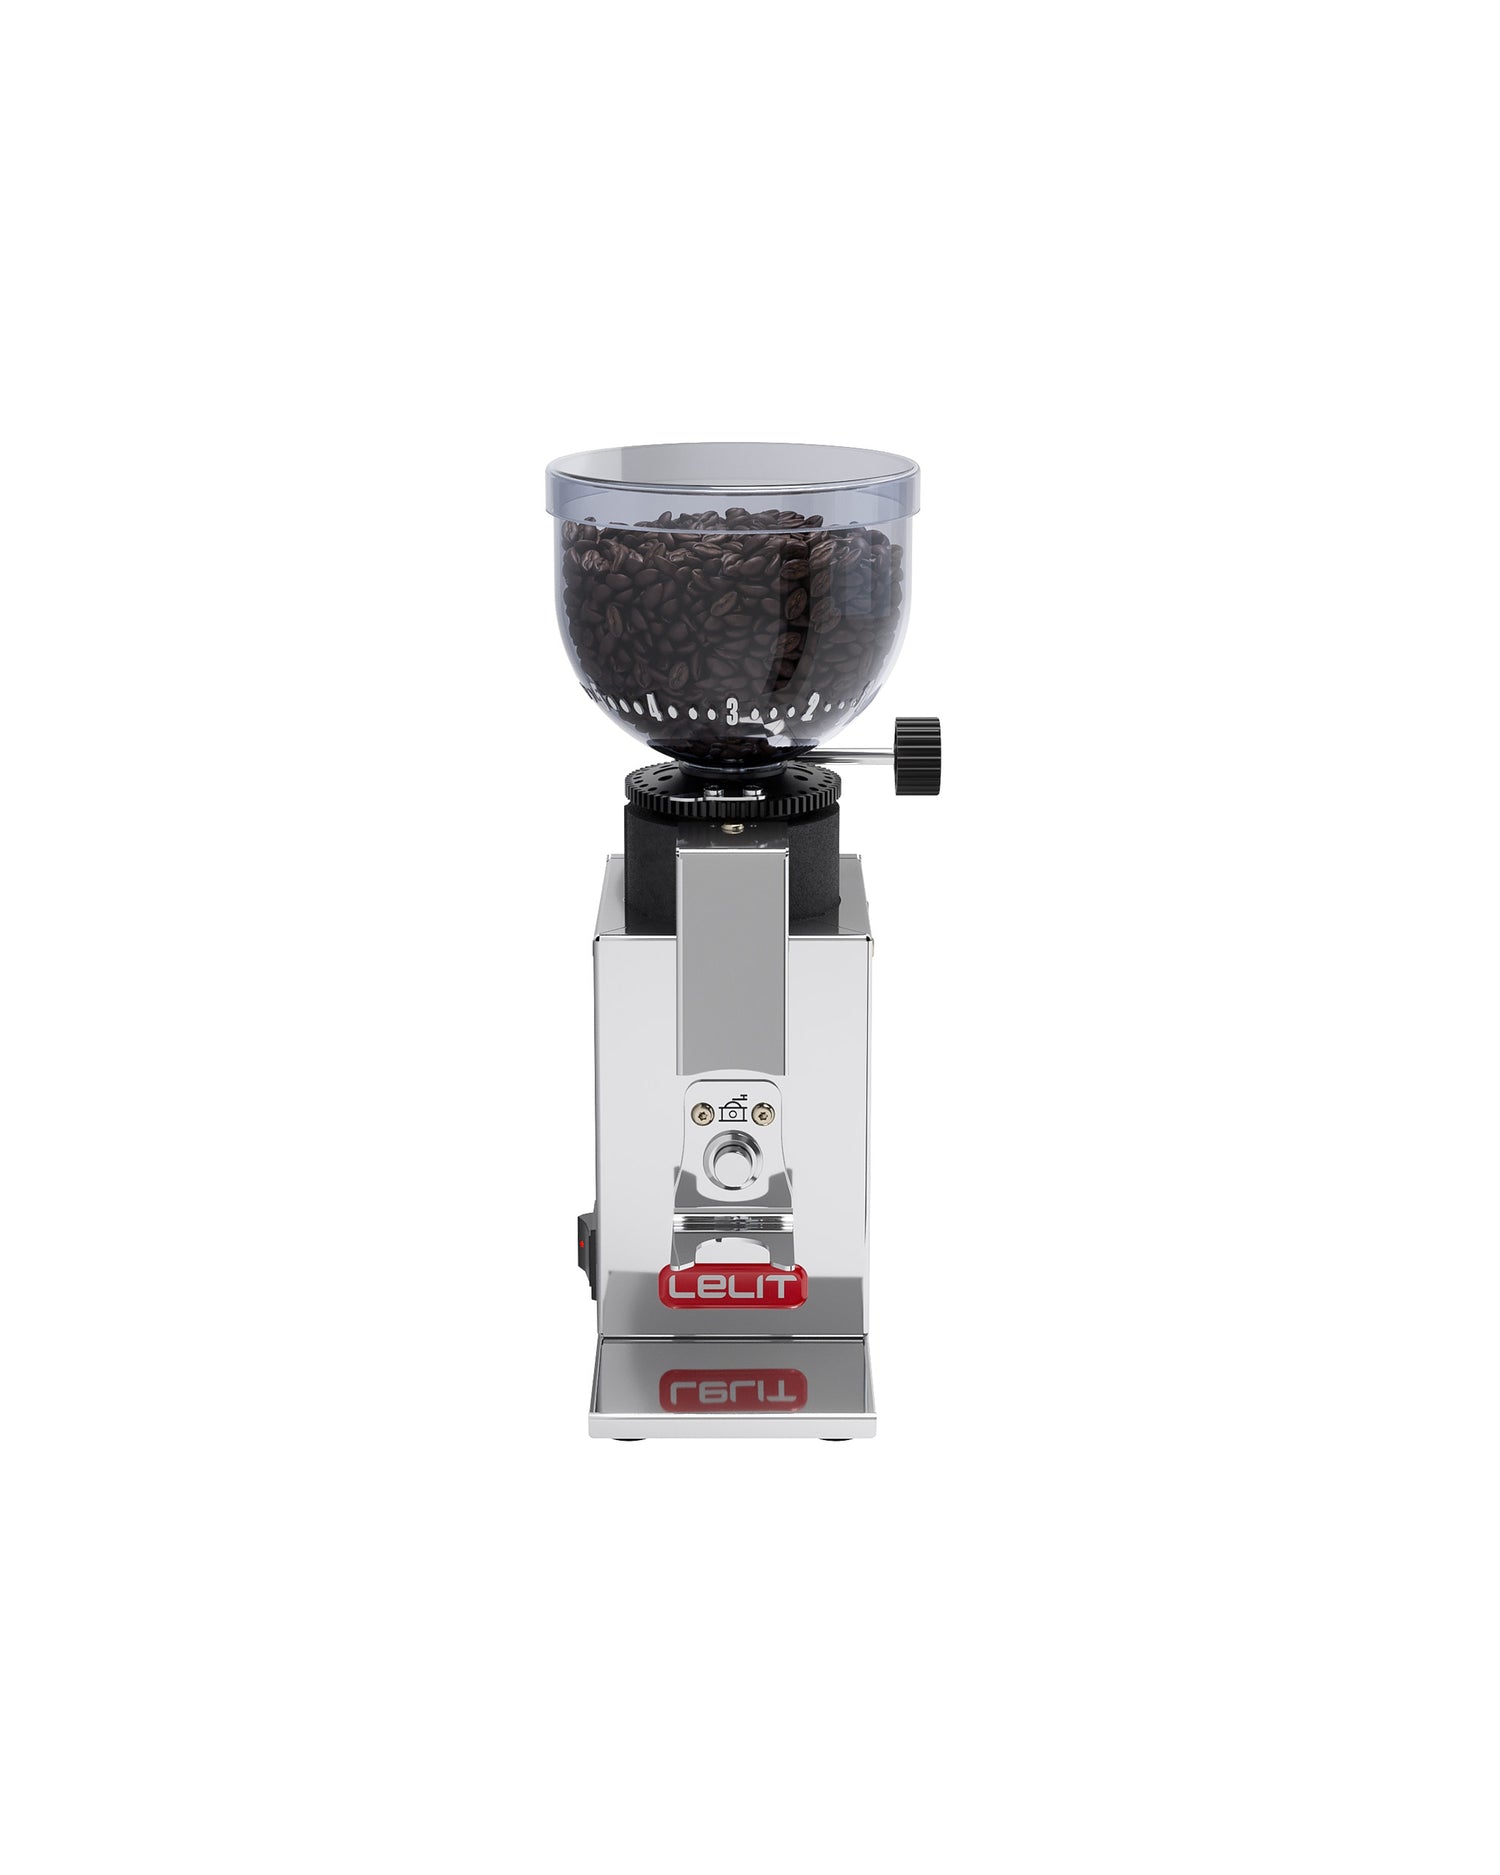 Residential coffee grinders